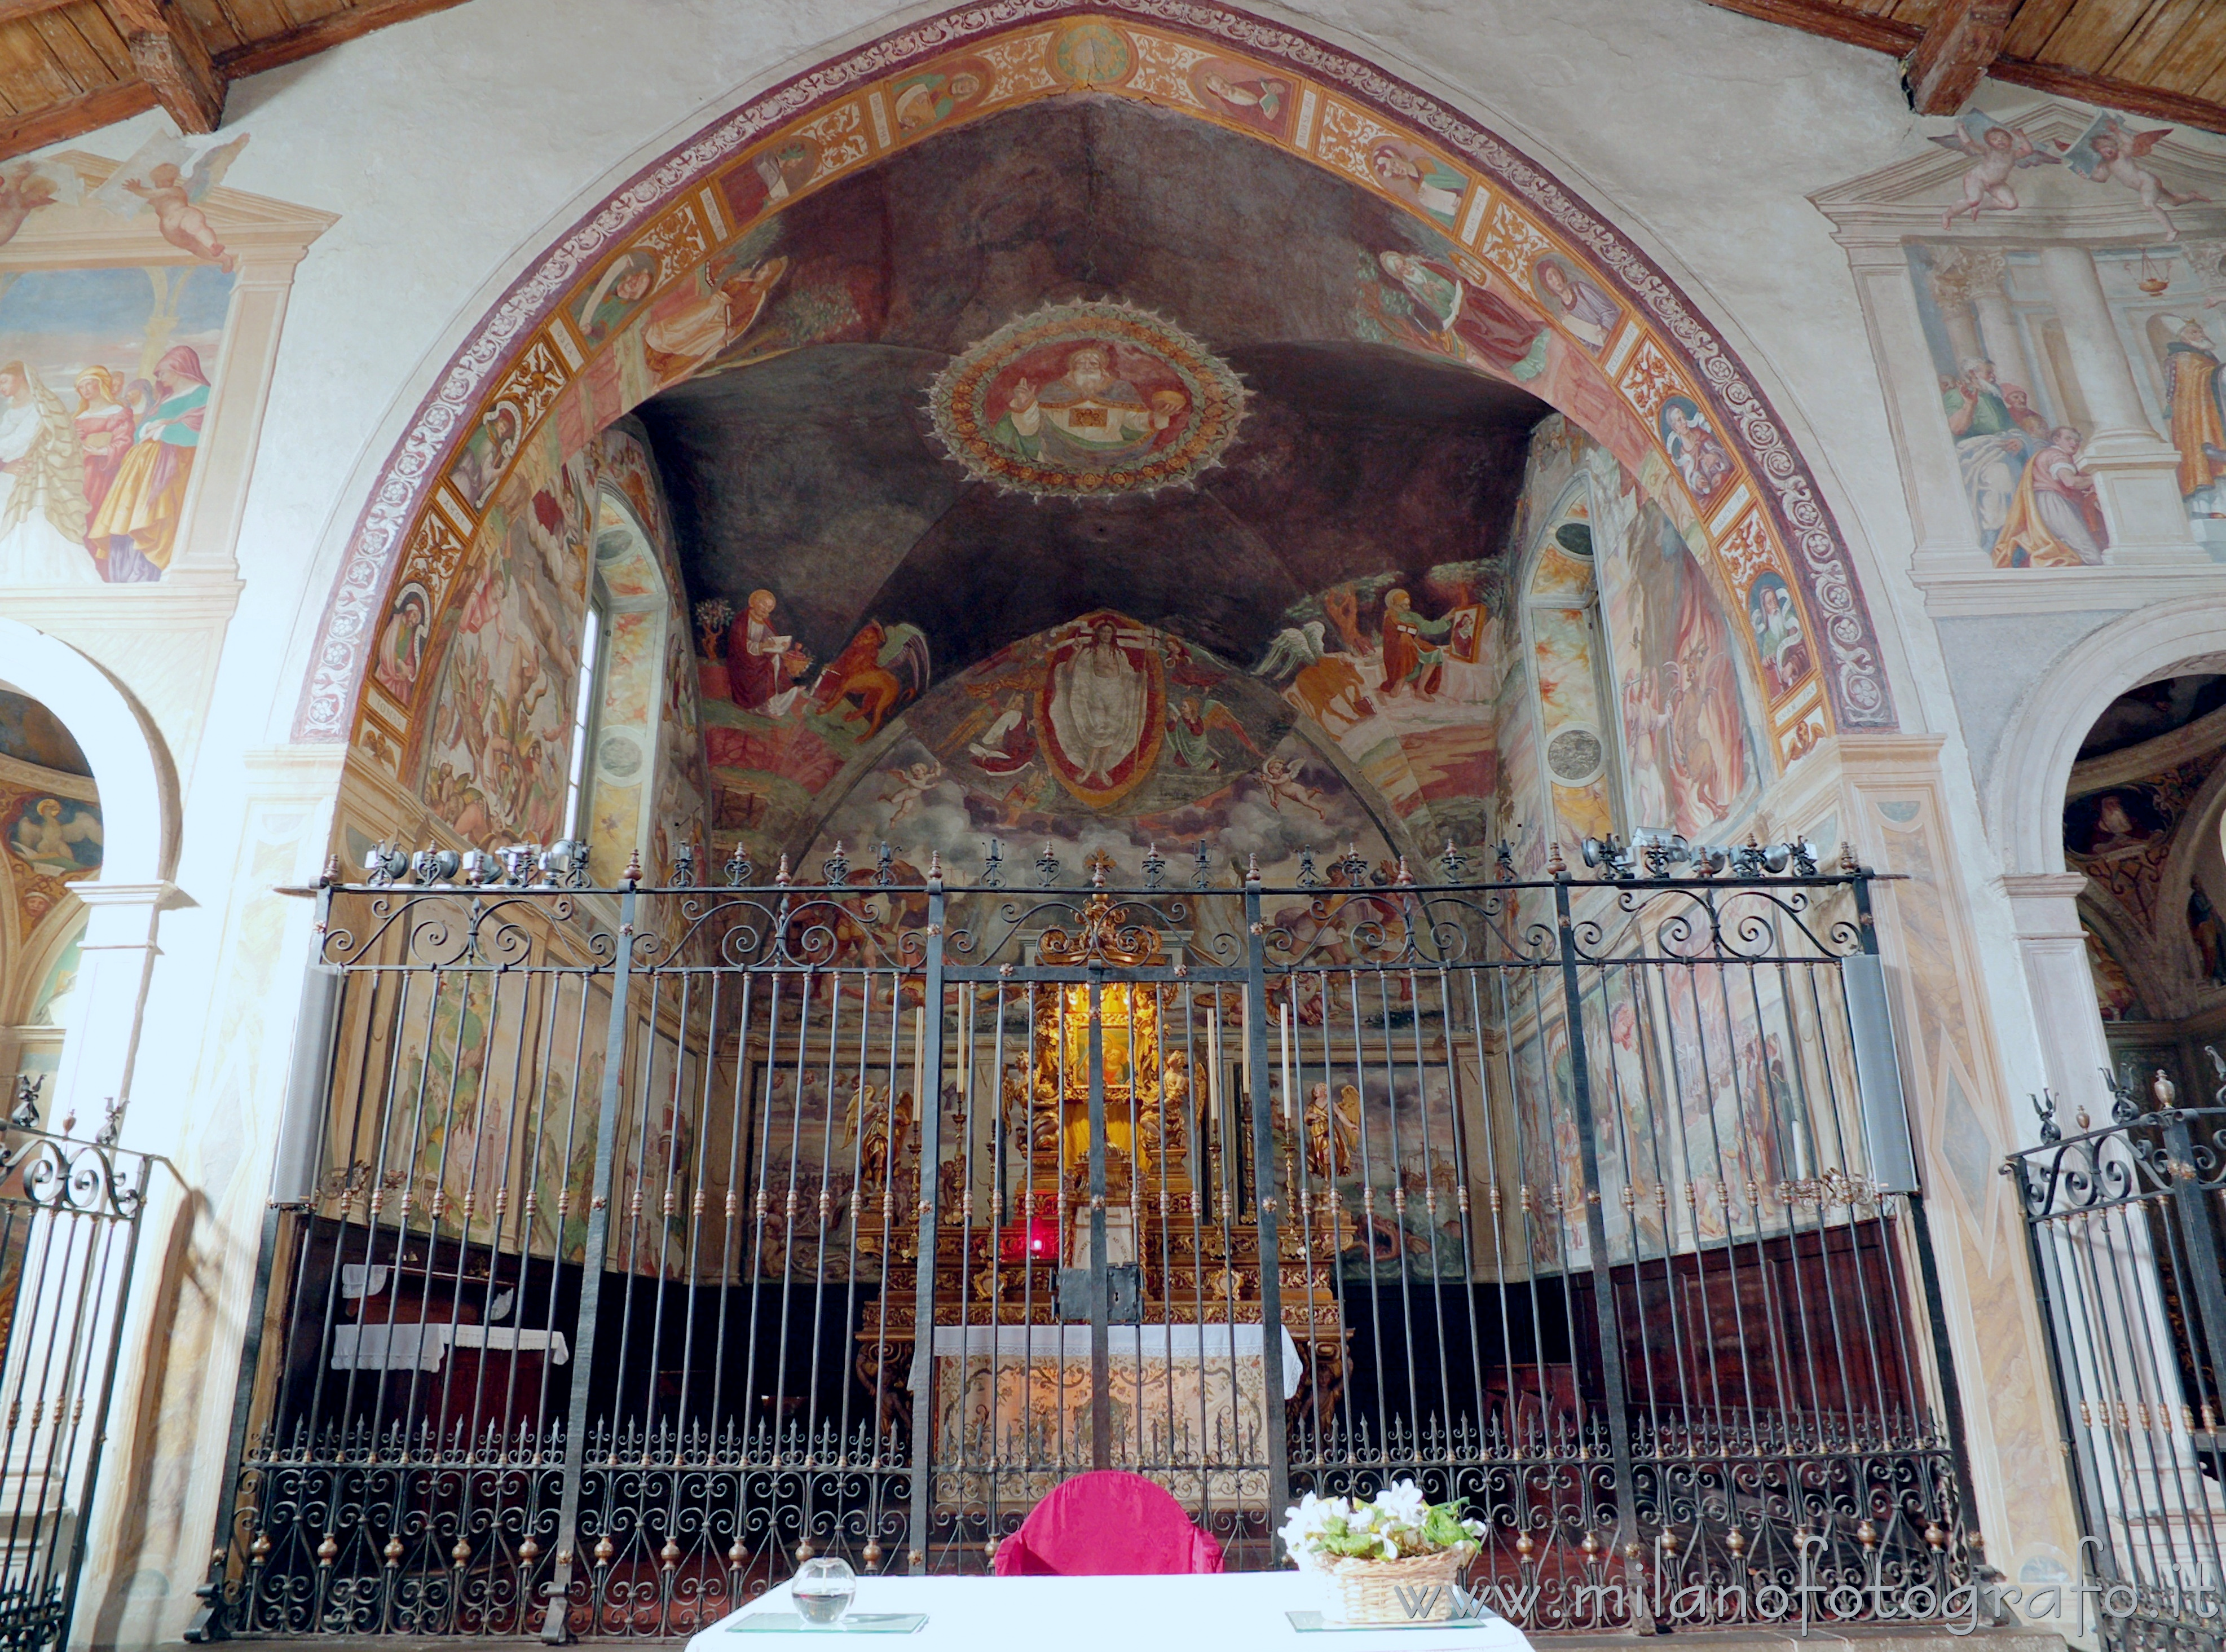 Bergamo (Italy): Central apse of the Church of San Michele al Pozzo - Bergamo (Italy)